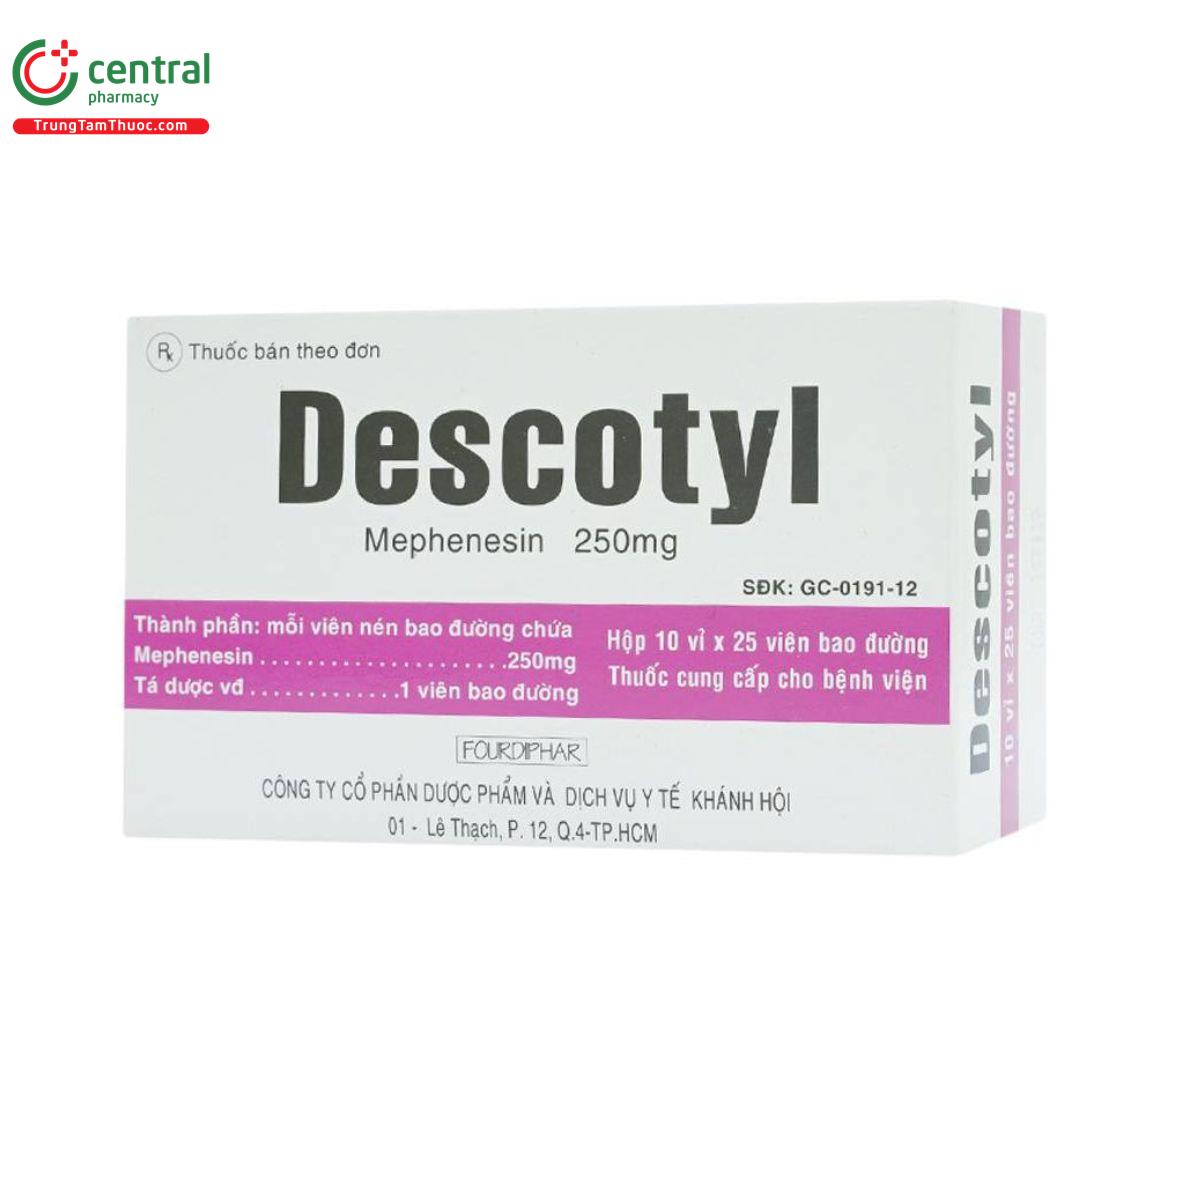 descotyl 250mg 4 D1671